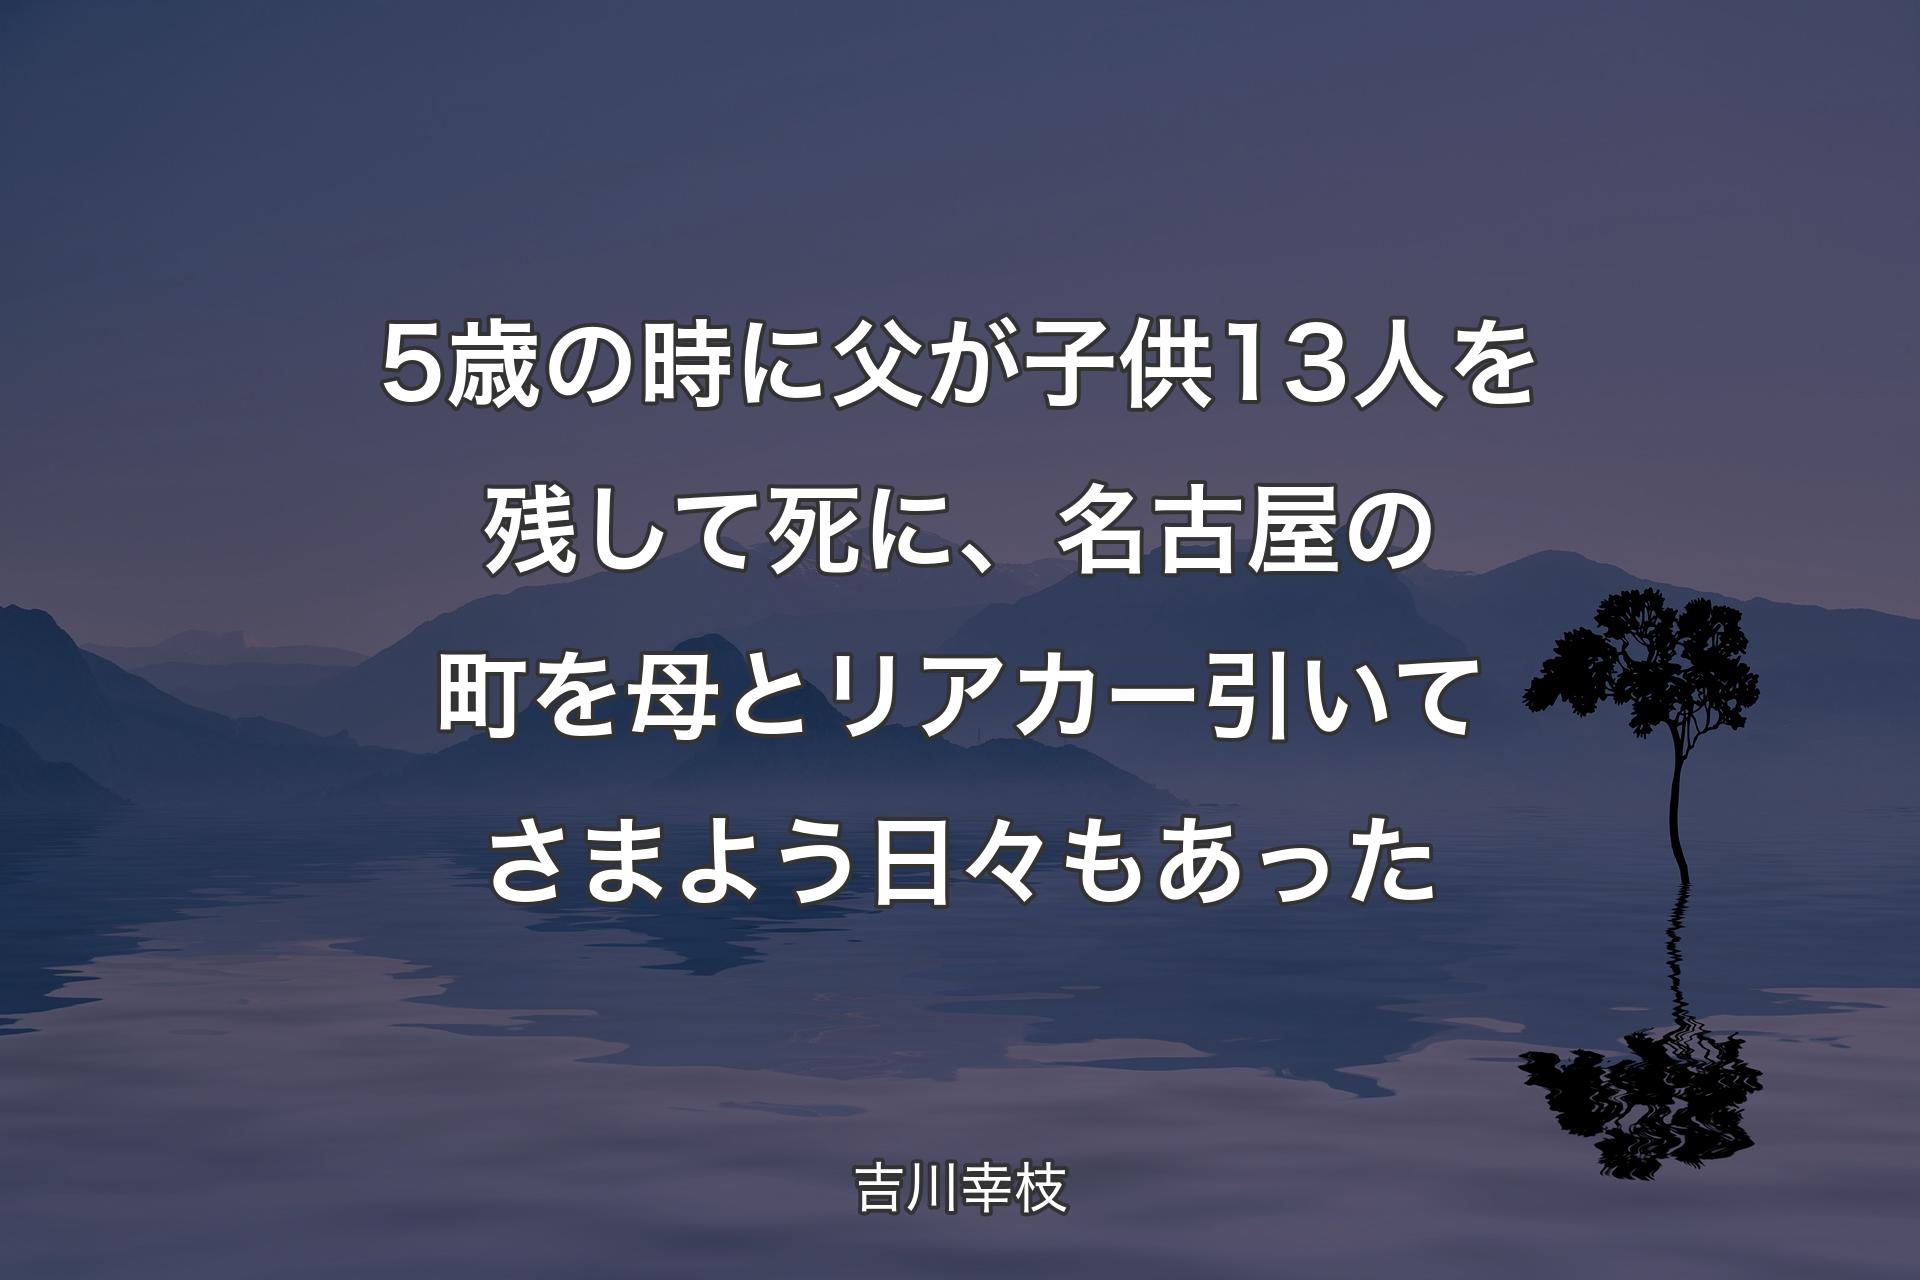 【背景4】5歳の時に父が子供13人を残して死に、名古屋の町を母とリアカー引いてさまよう日々もあった - 吉川幸枝